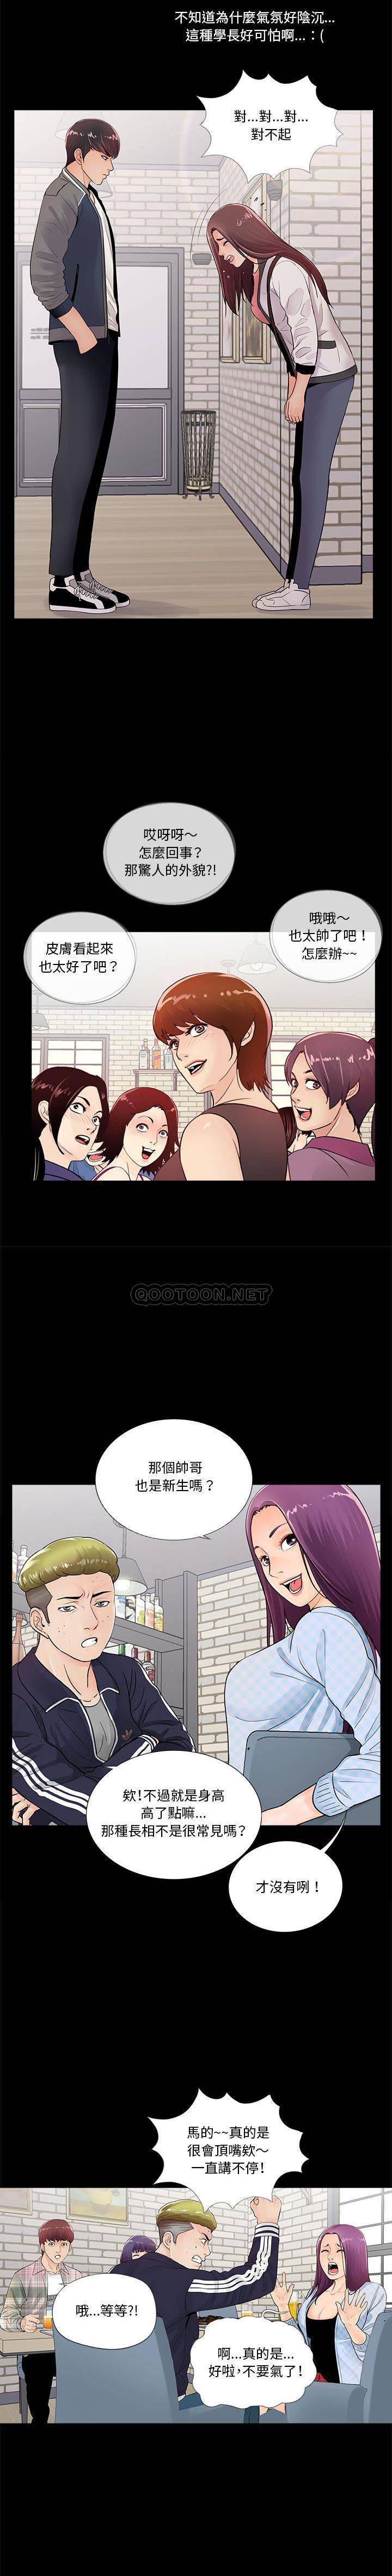 韩国污漫画 神秘復學生 第1话 6